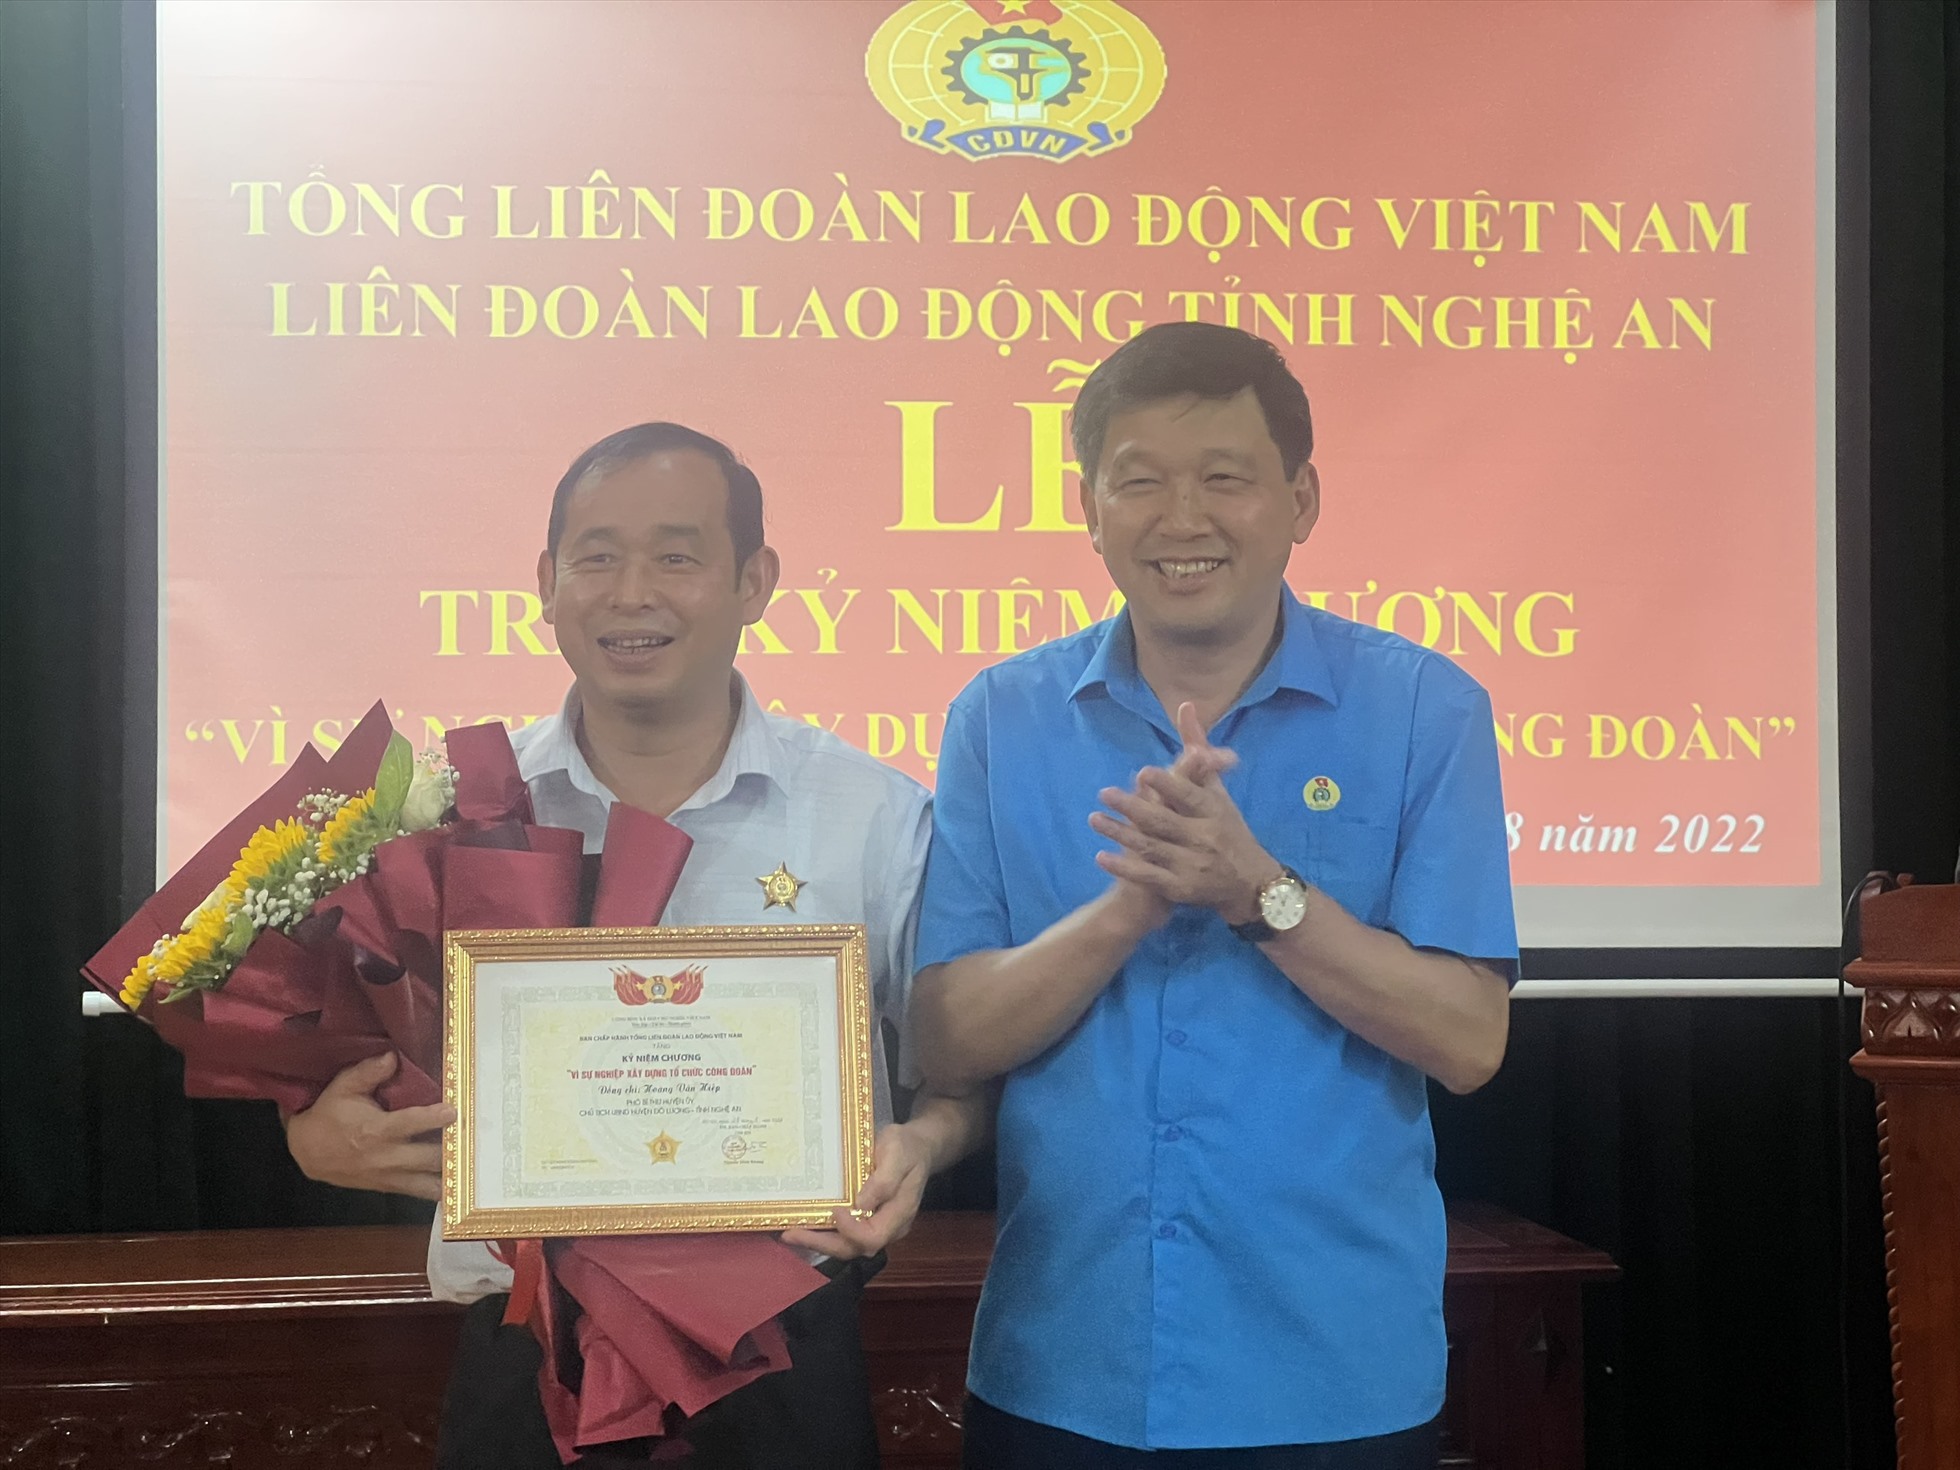 Đồng chí Kha Văn Tám trao tặng kỷ niệm chương vì sự nghiệp công đoàn cho Hoàng Văn Hiệp, Phó Bí thư Huyện ủy, Chủ tịch UBND huyện Đô Lương. Ảnh: T.T